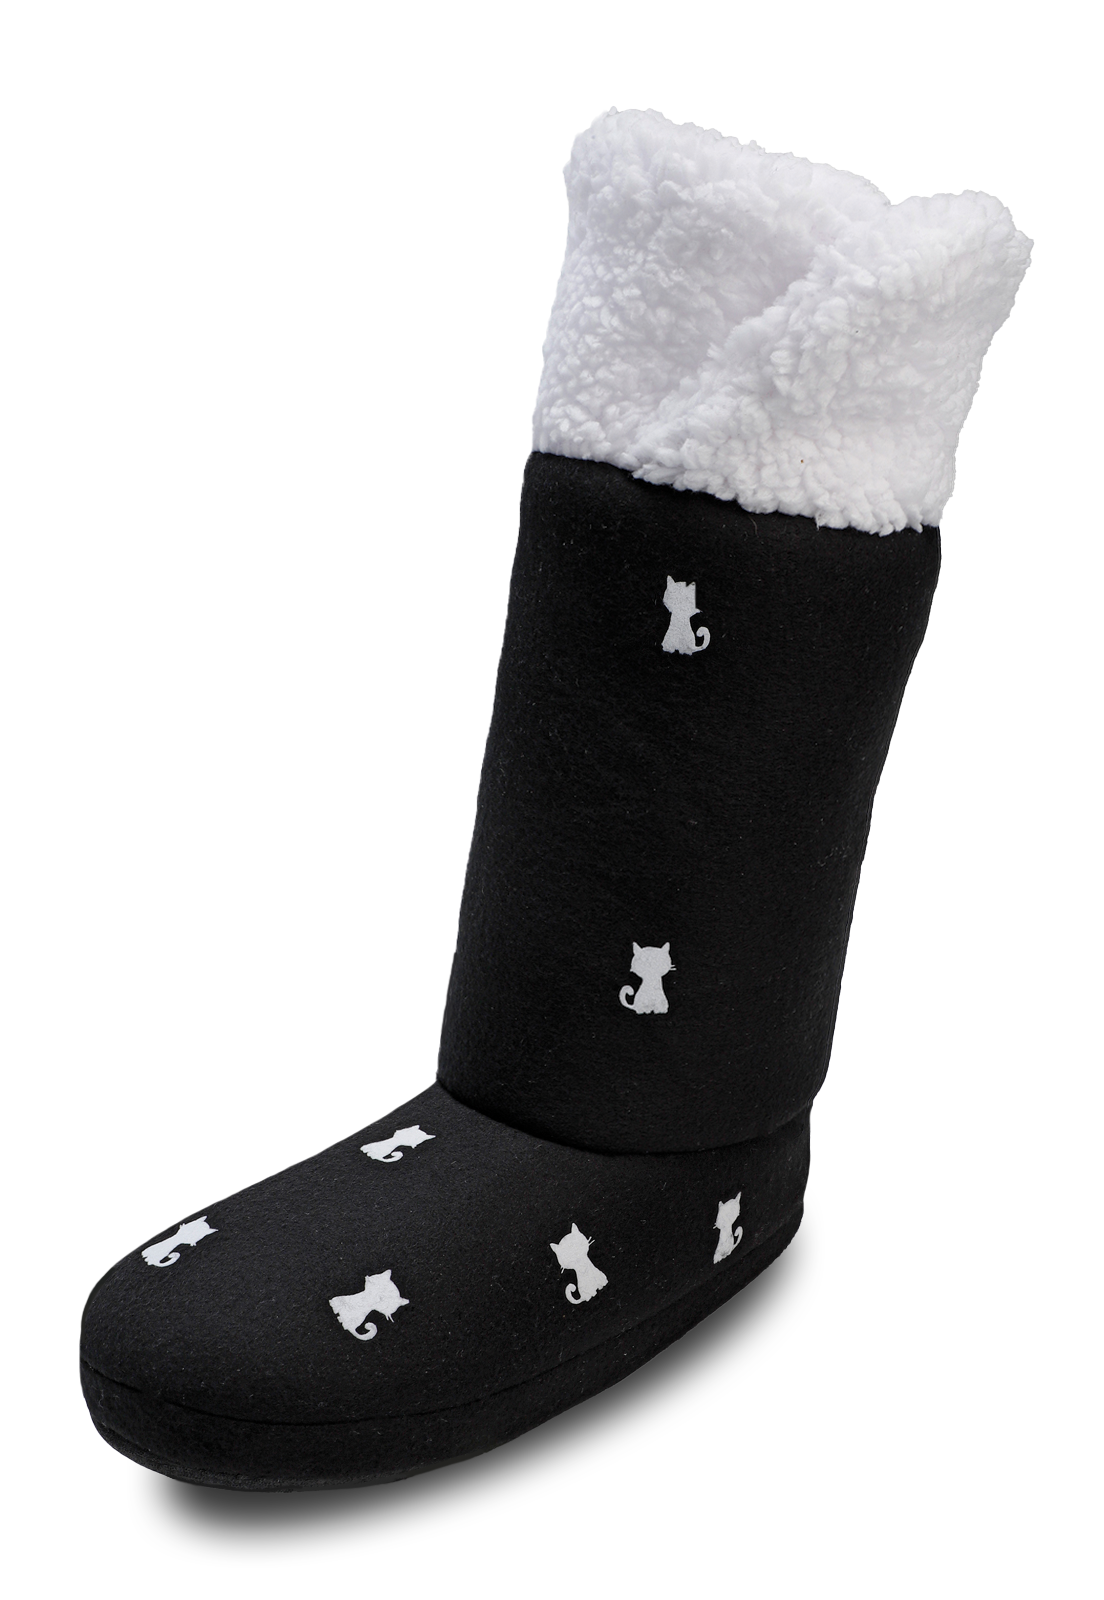 botas pantuflas con suela de caucho de color negro con gatitos blancos estampados